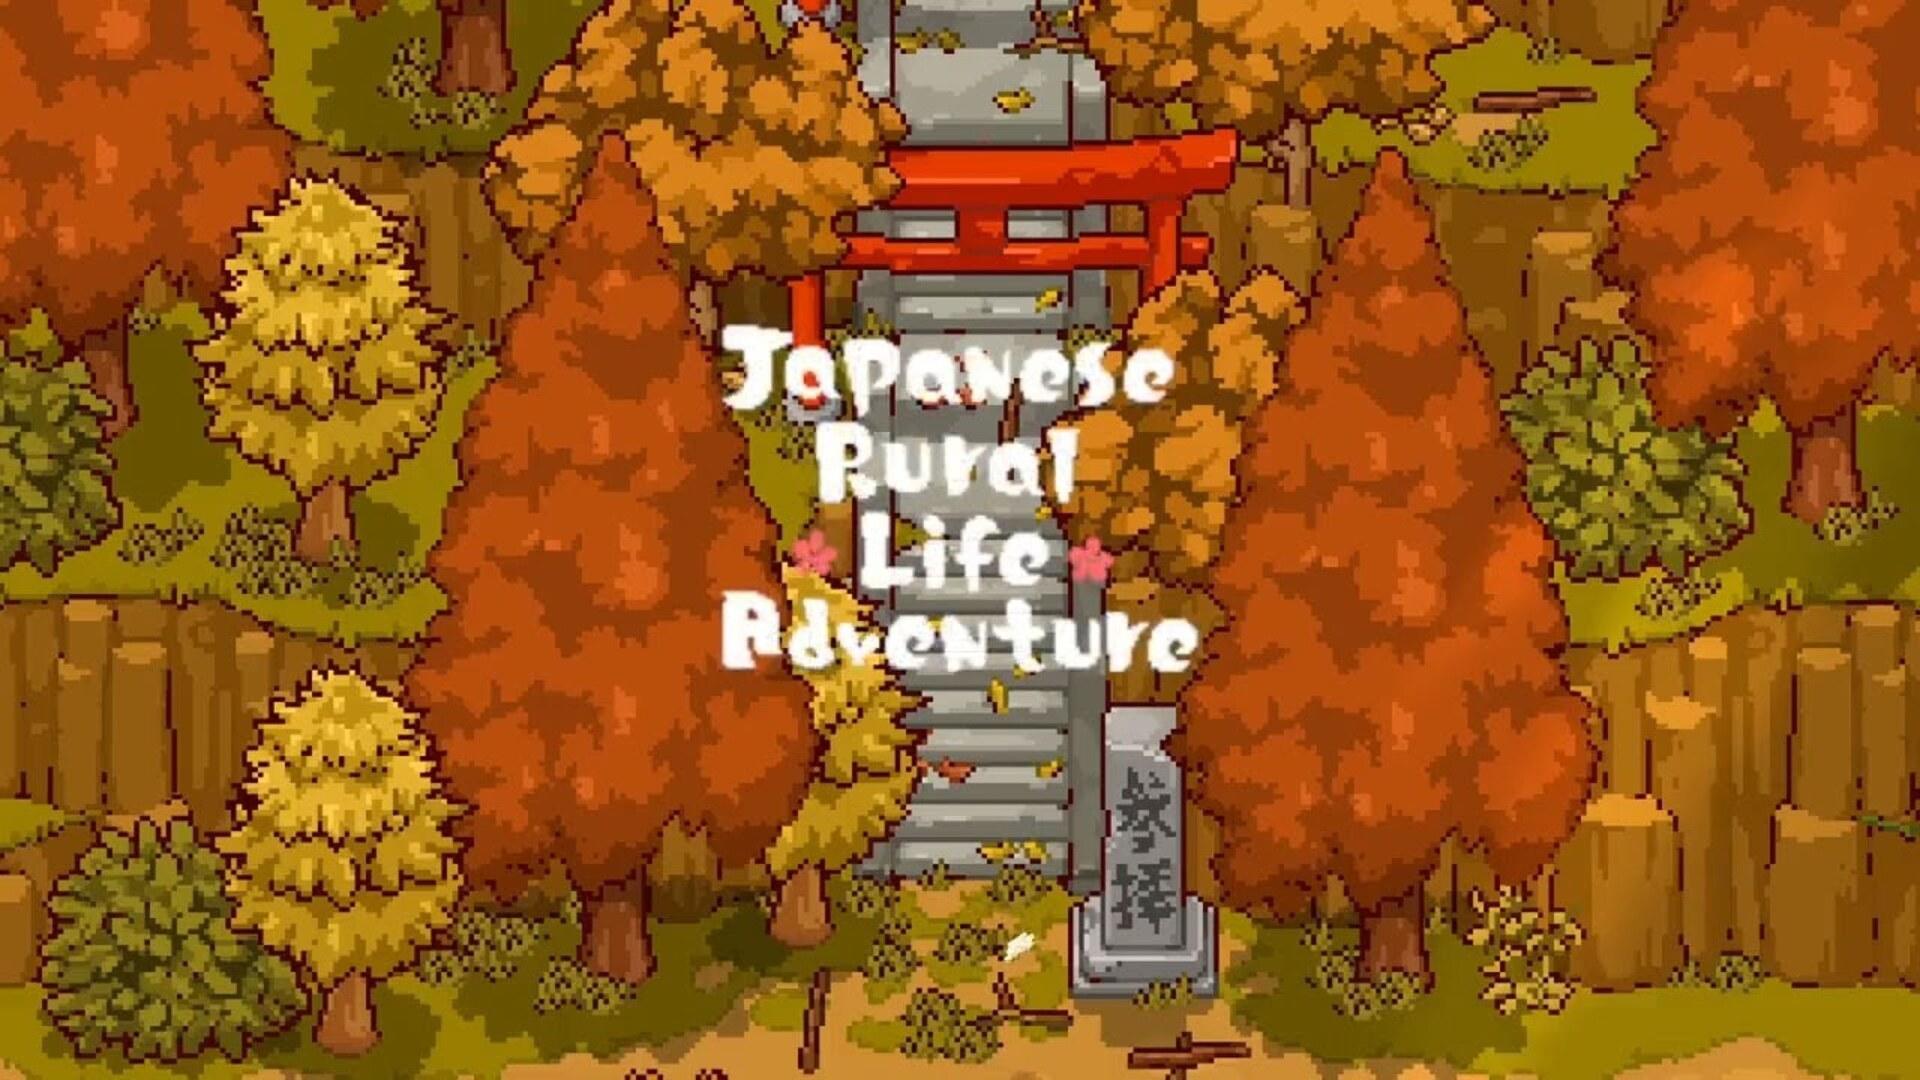 Banner of การผจญภัยในชีวิตชนบทของญี่ปุ่น 